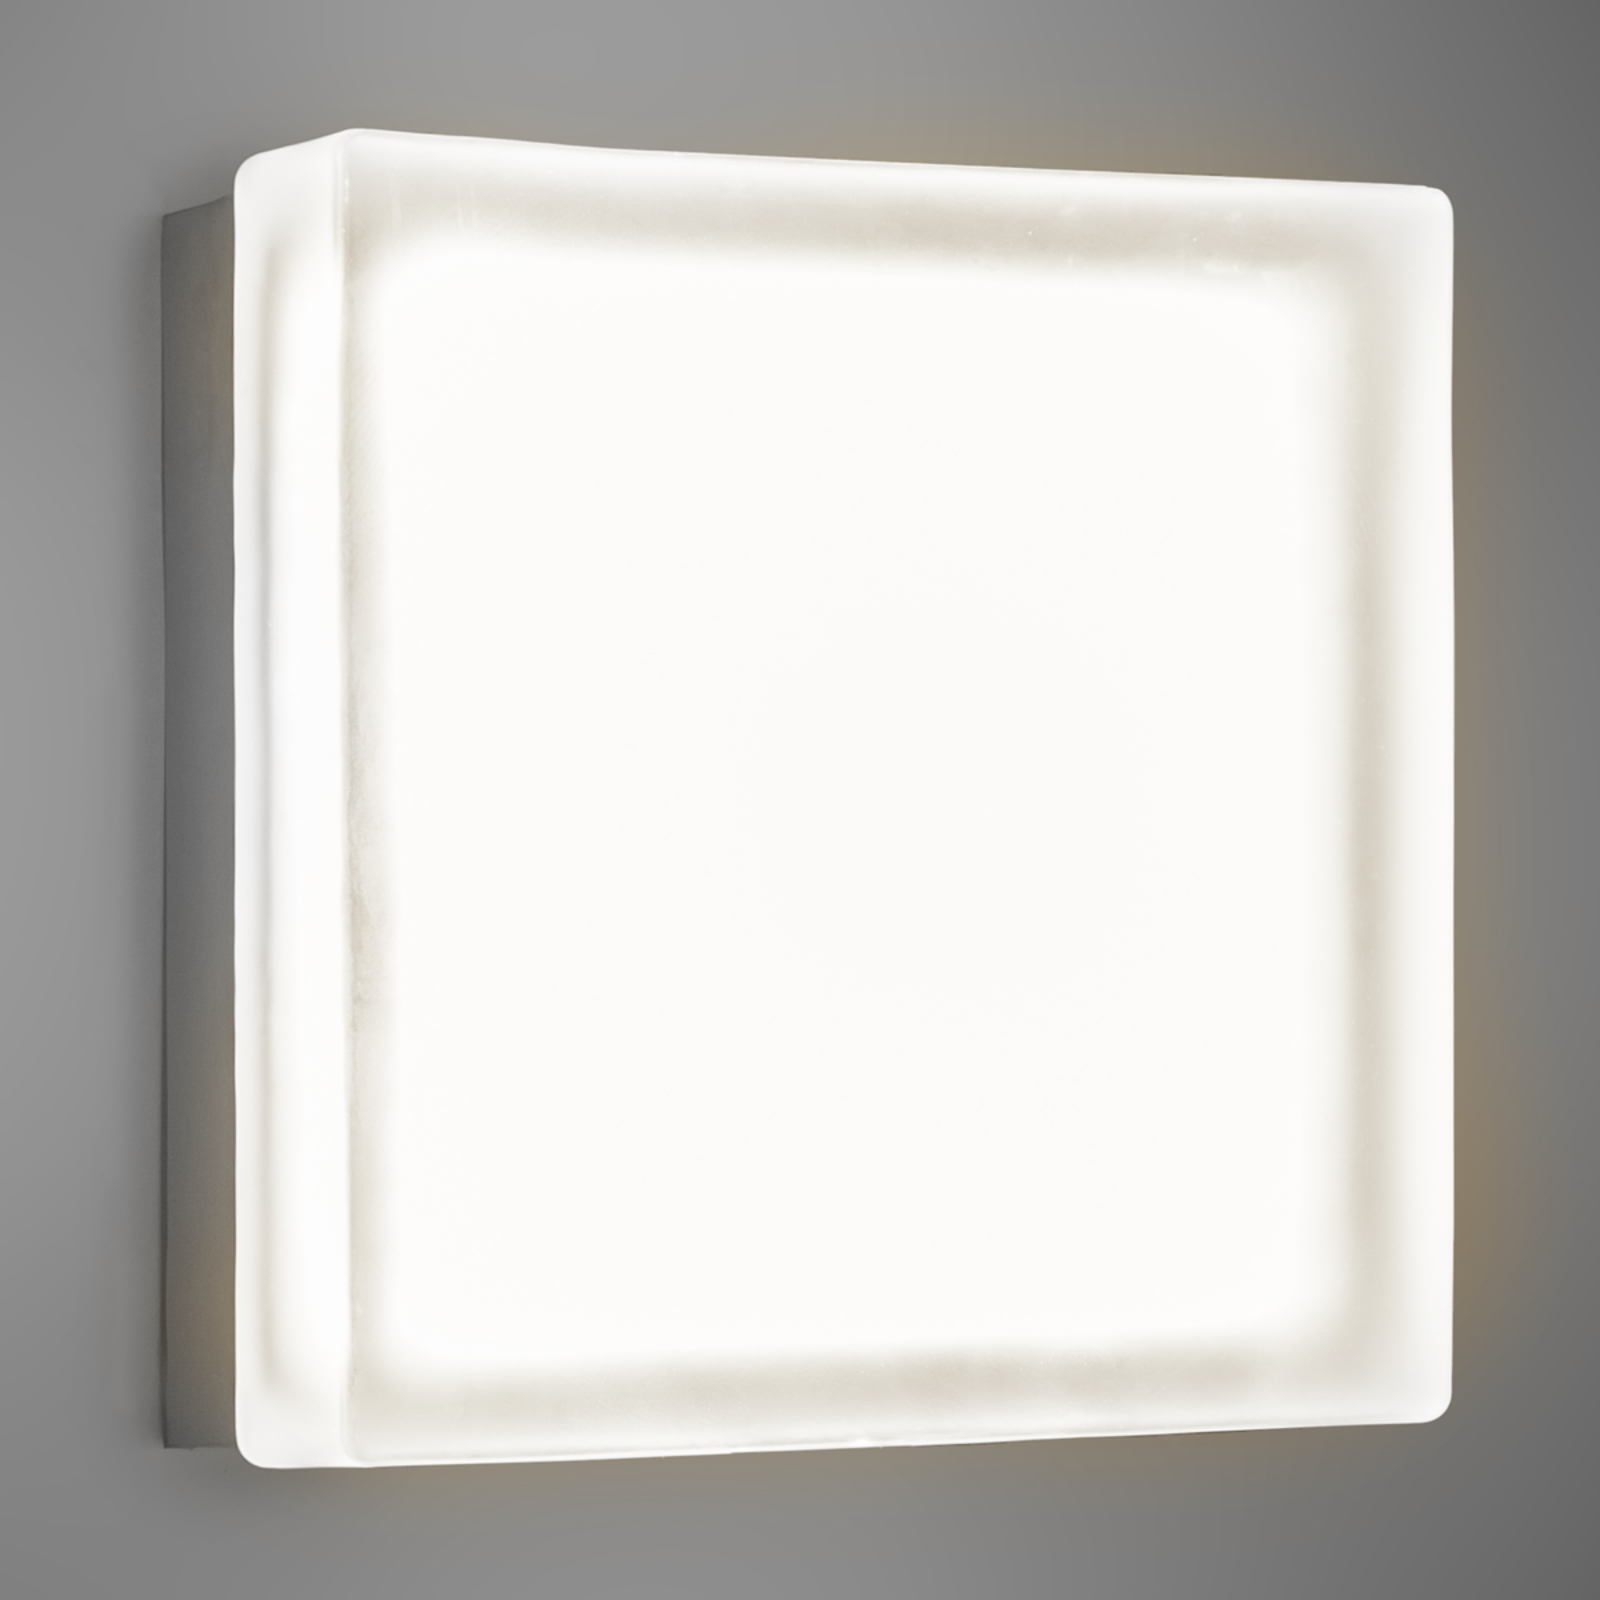 Kwadratowy kinkiet LED Briq 02, ciepła biel